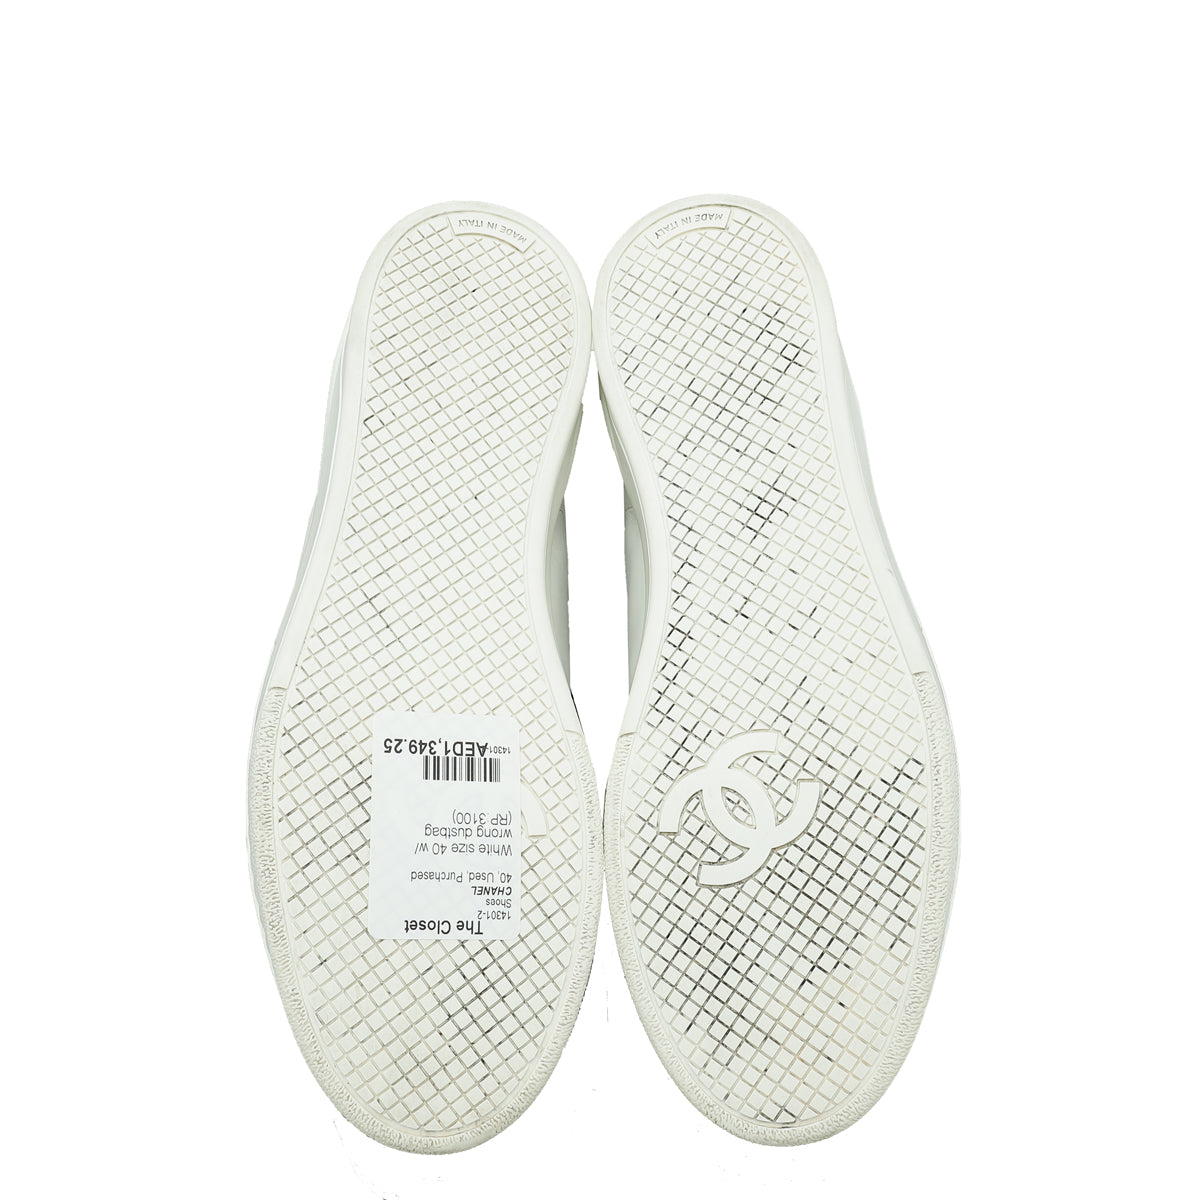 2019 summer/fall season Chanel Sneakers size 9.... - Depop